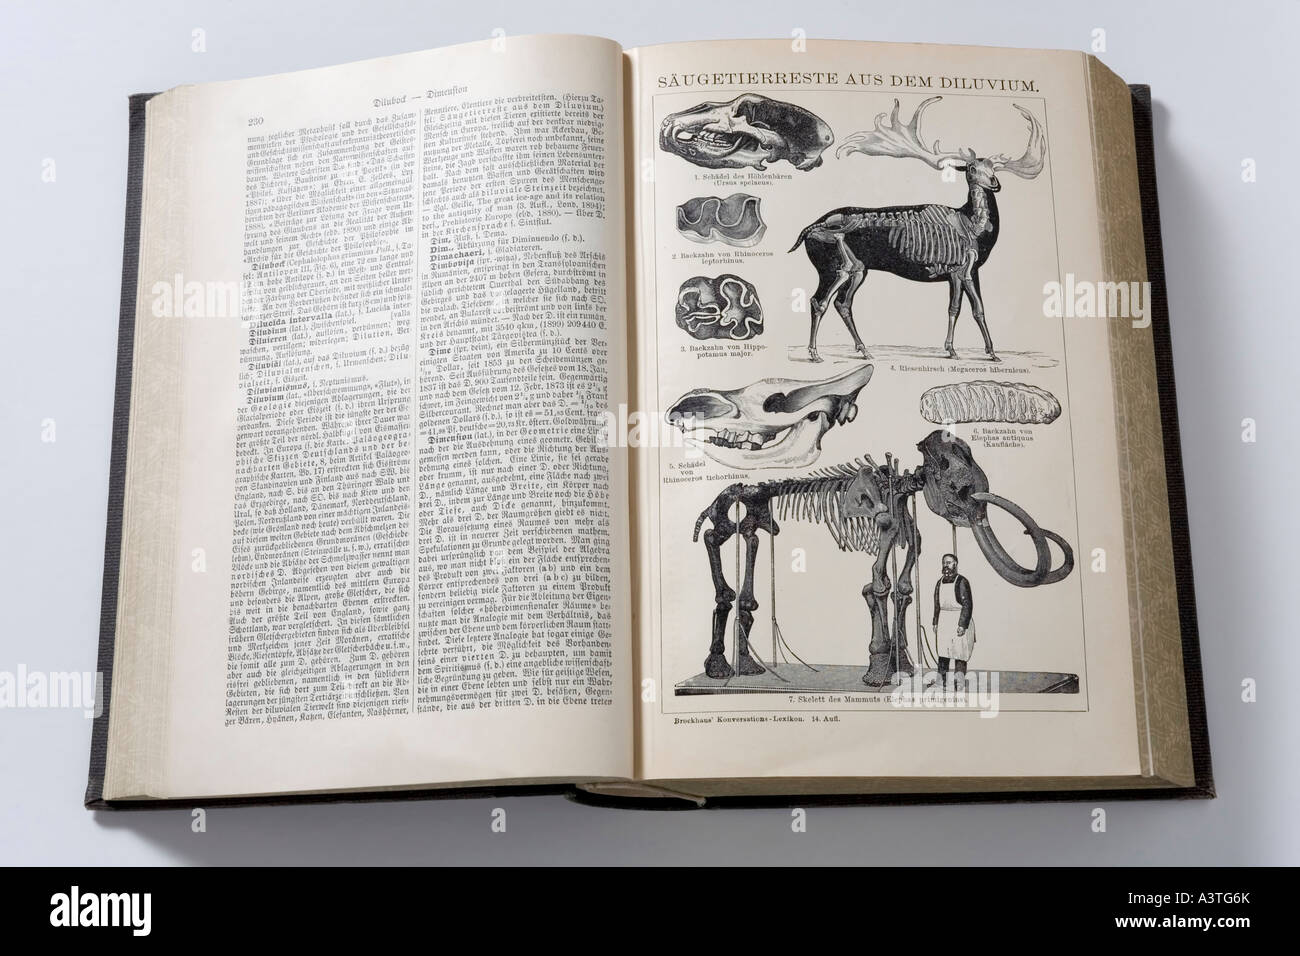 Imagen de mamíferos de la edad de hielo, enciclopedia alemana desde 1904 Foto de stock